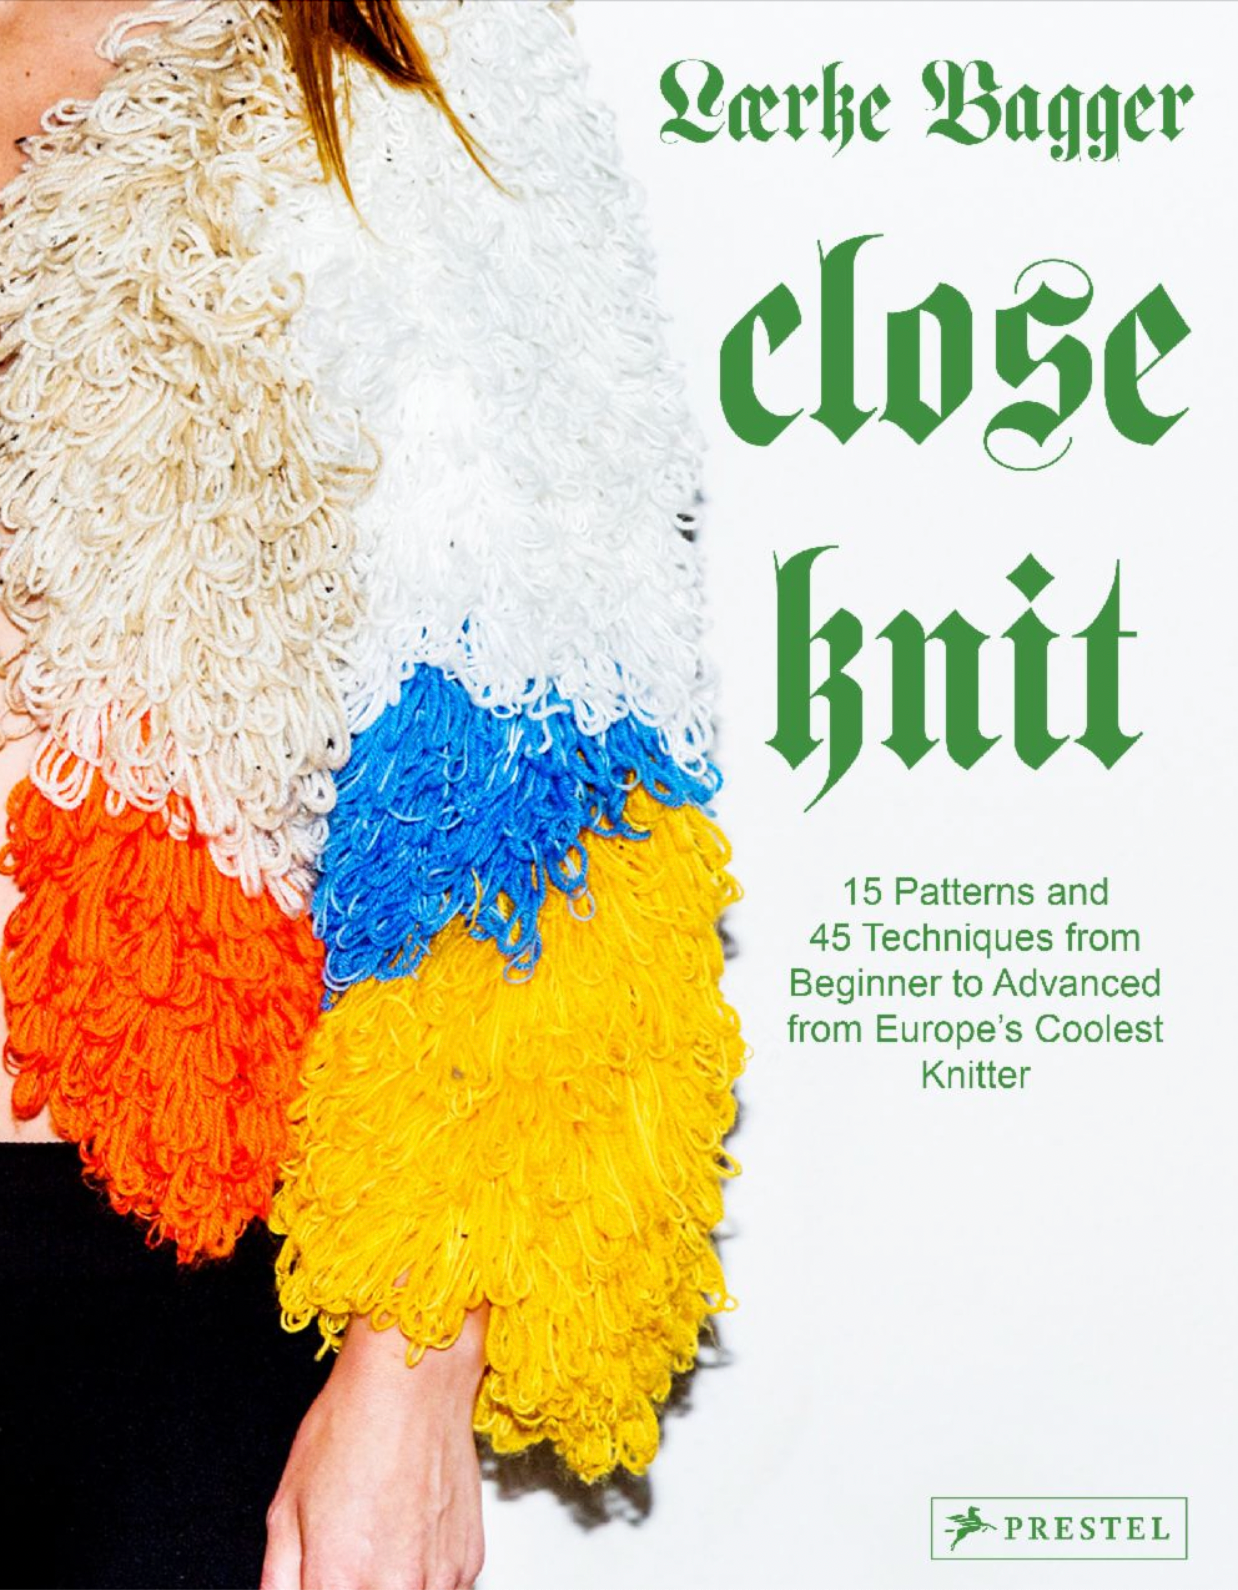 Close Knit by Lærke Bagger Lærke Bagger